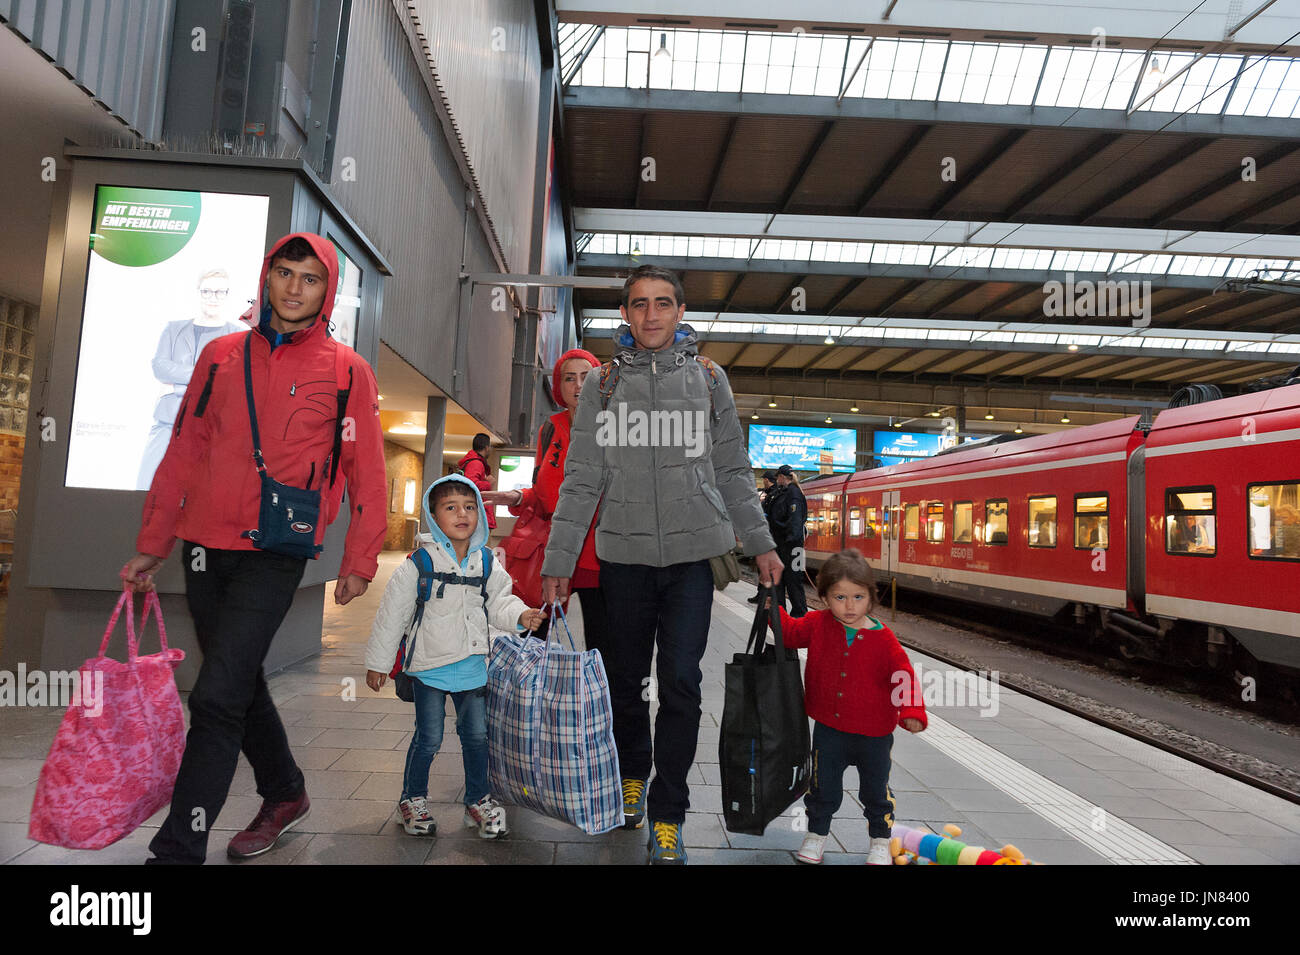 Munich, Alemania - 10 de septiembre de 2015: Dos familias de refugiados sirios llegan a la estación de Munich. Ellos están buscando asilo en Europa. Foto de stock